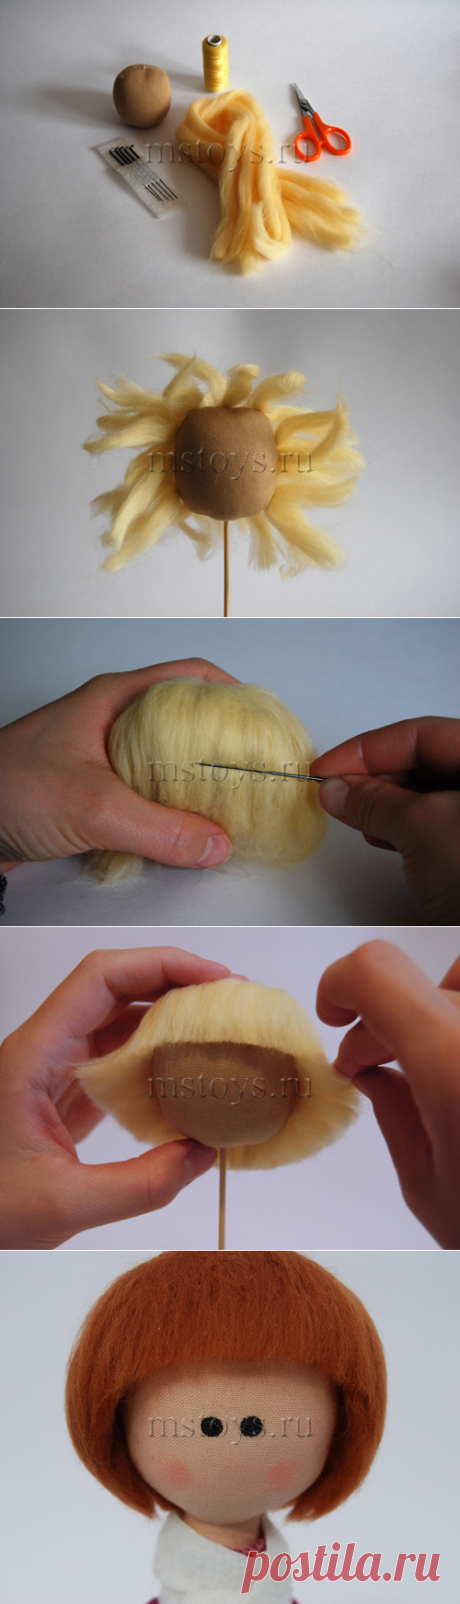 Как сделать кукле волосы. Волосы для куклы своими руками :: MSToys.ru